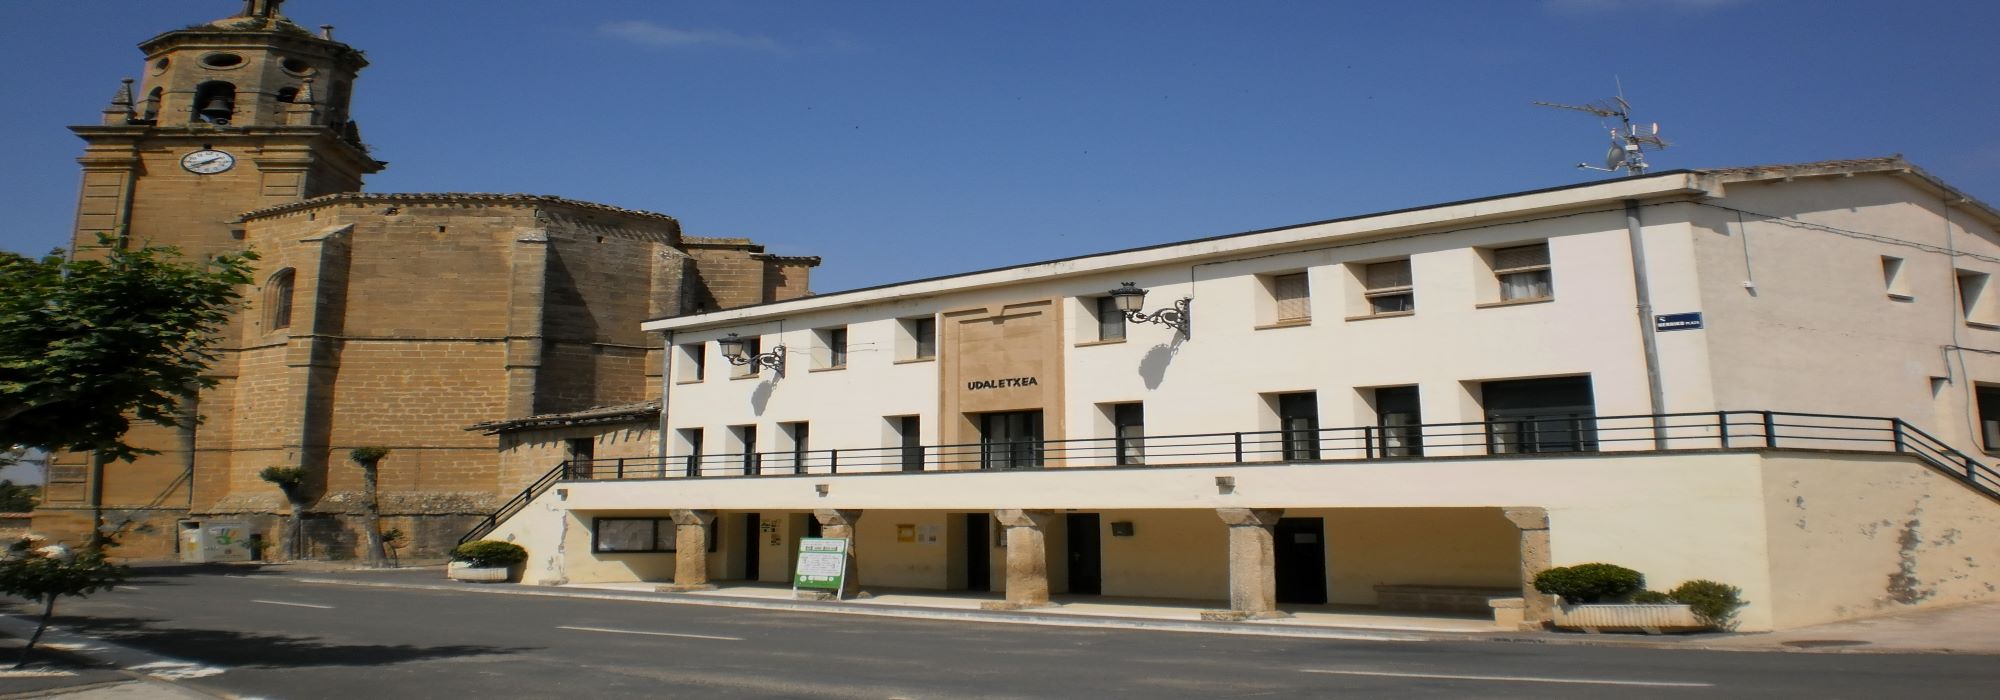 1. Ayuntamiento de Leza